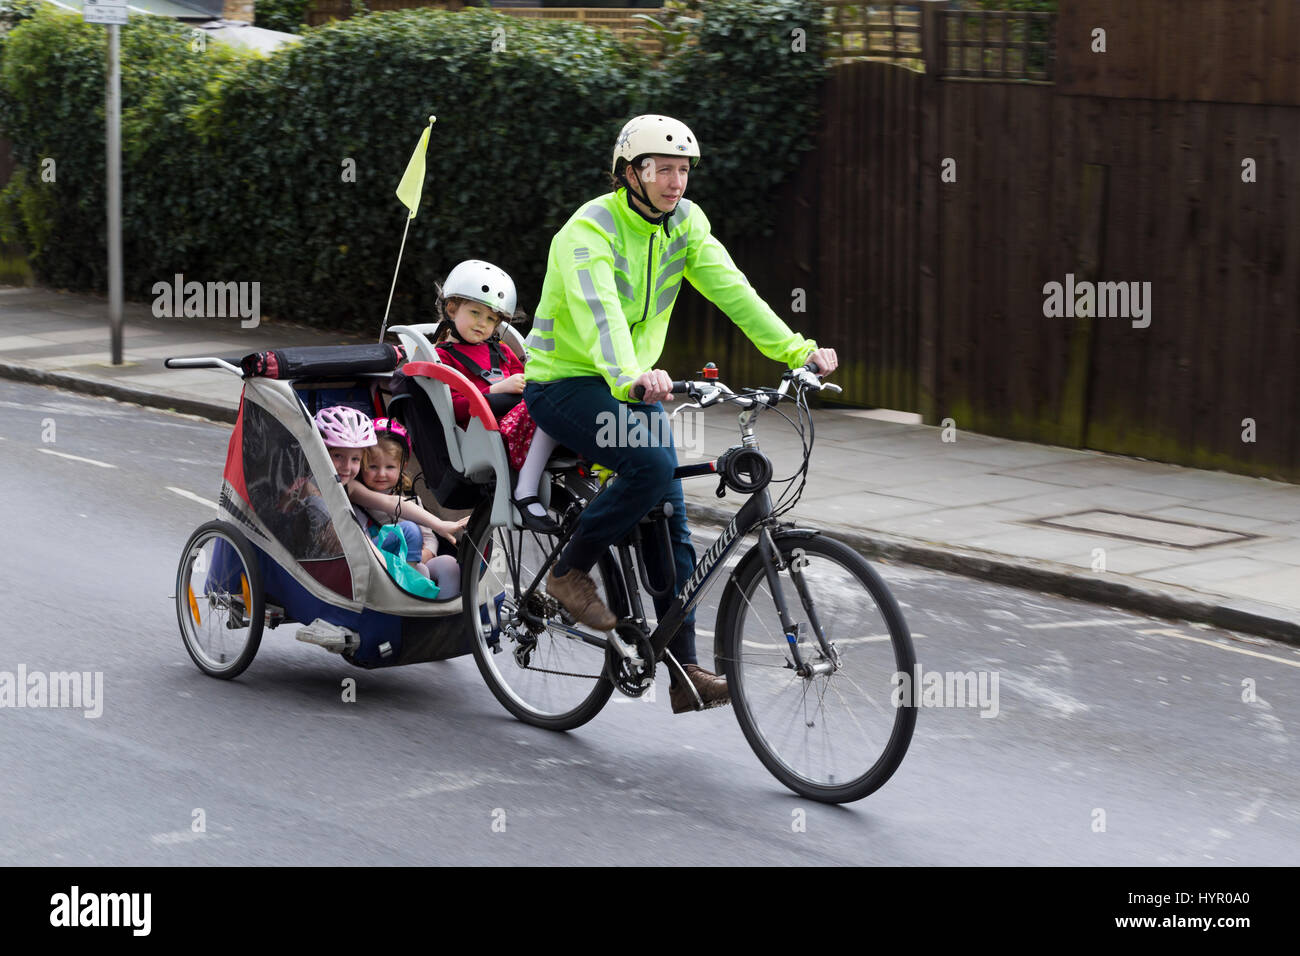 Cycliste femme sur Vélo / Vélo avec  + 3 enfants ; coopération avec siège enfant pilote casque & cycle remorquage remorque Chariot avec 2 / 2 enfants avec un casque. UK. Banque D'Images